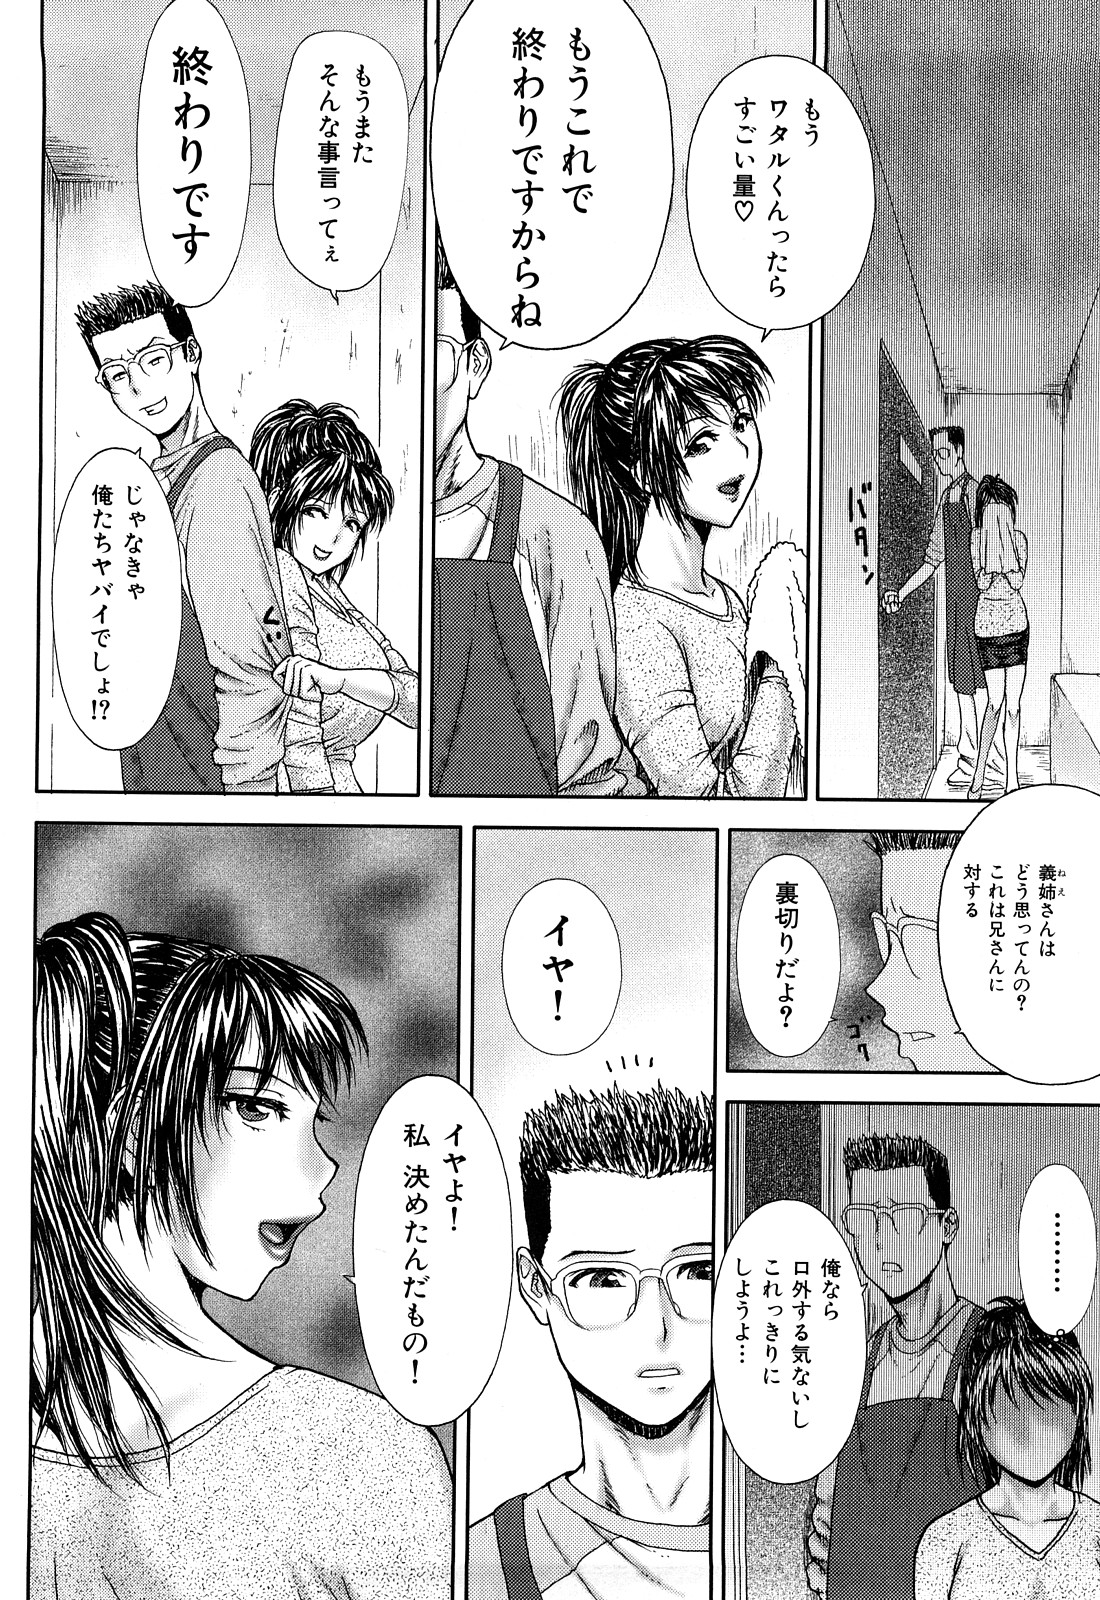 [EXTREME] Tsuma No Shizuku ~Nikuyome Miyuki 29 sai~ page 10 full